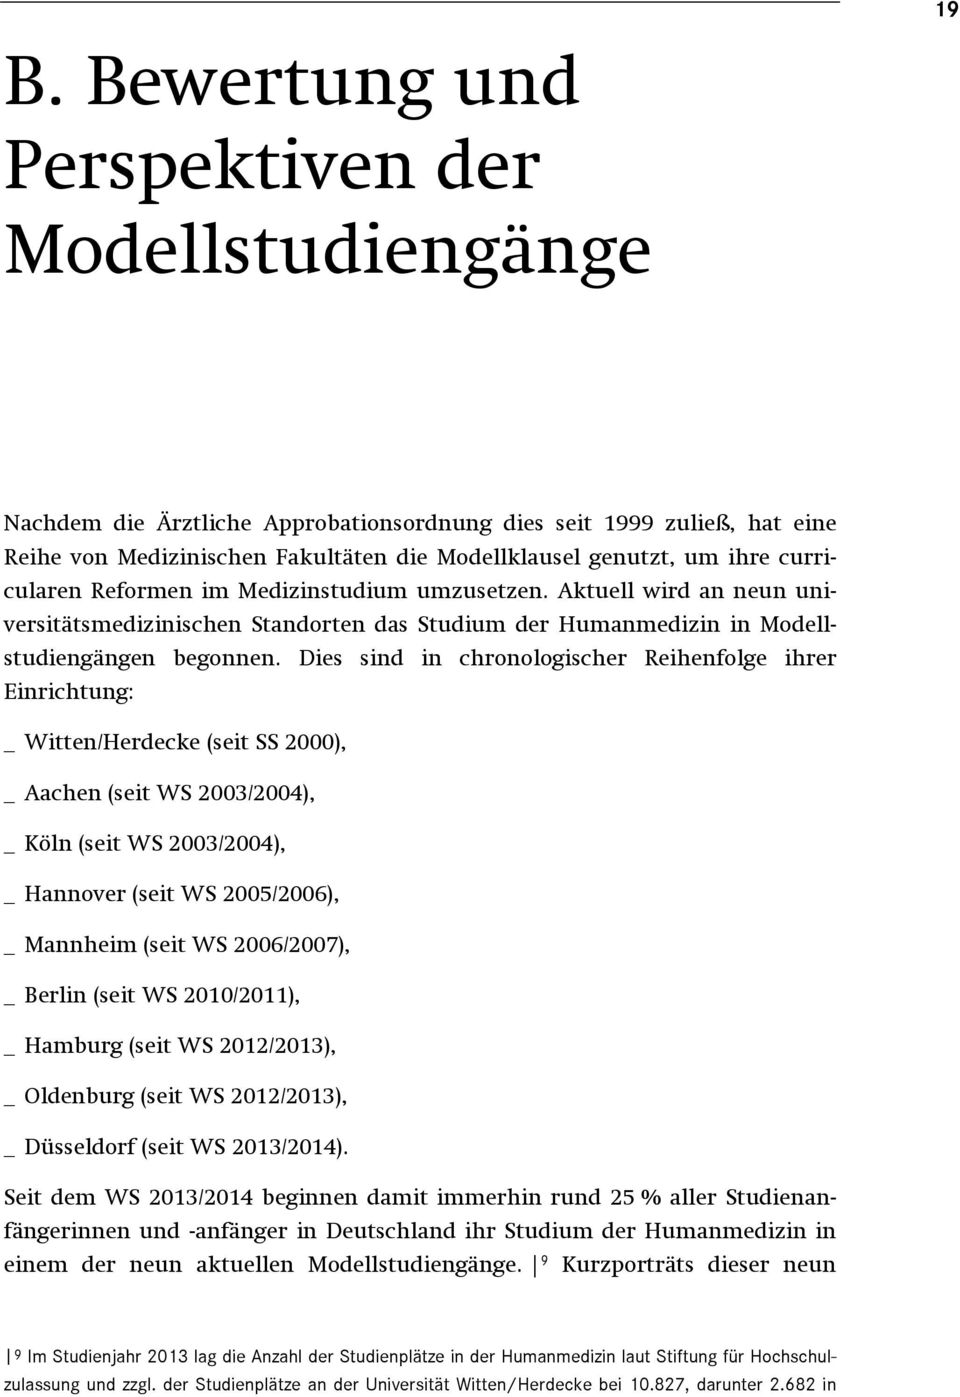 Dies sind in chronologischer Reihenfolge ihrer Einrichtung: _ Witten/Herdecke (seit SS 2000), _ Aachen (seit WS 2003/2004), _ Köln (seit WS 2003/2004), _ Hannover (seit WS 2005/2006), _ Mannheim